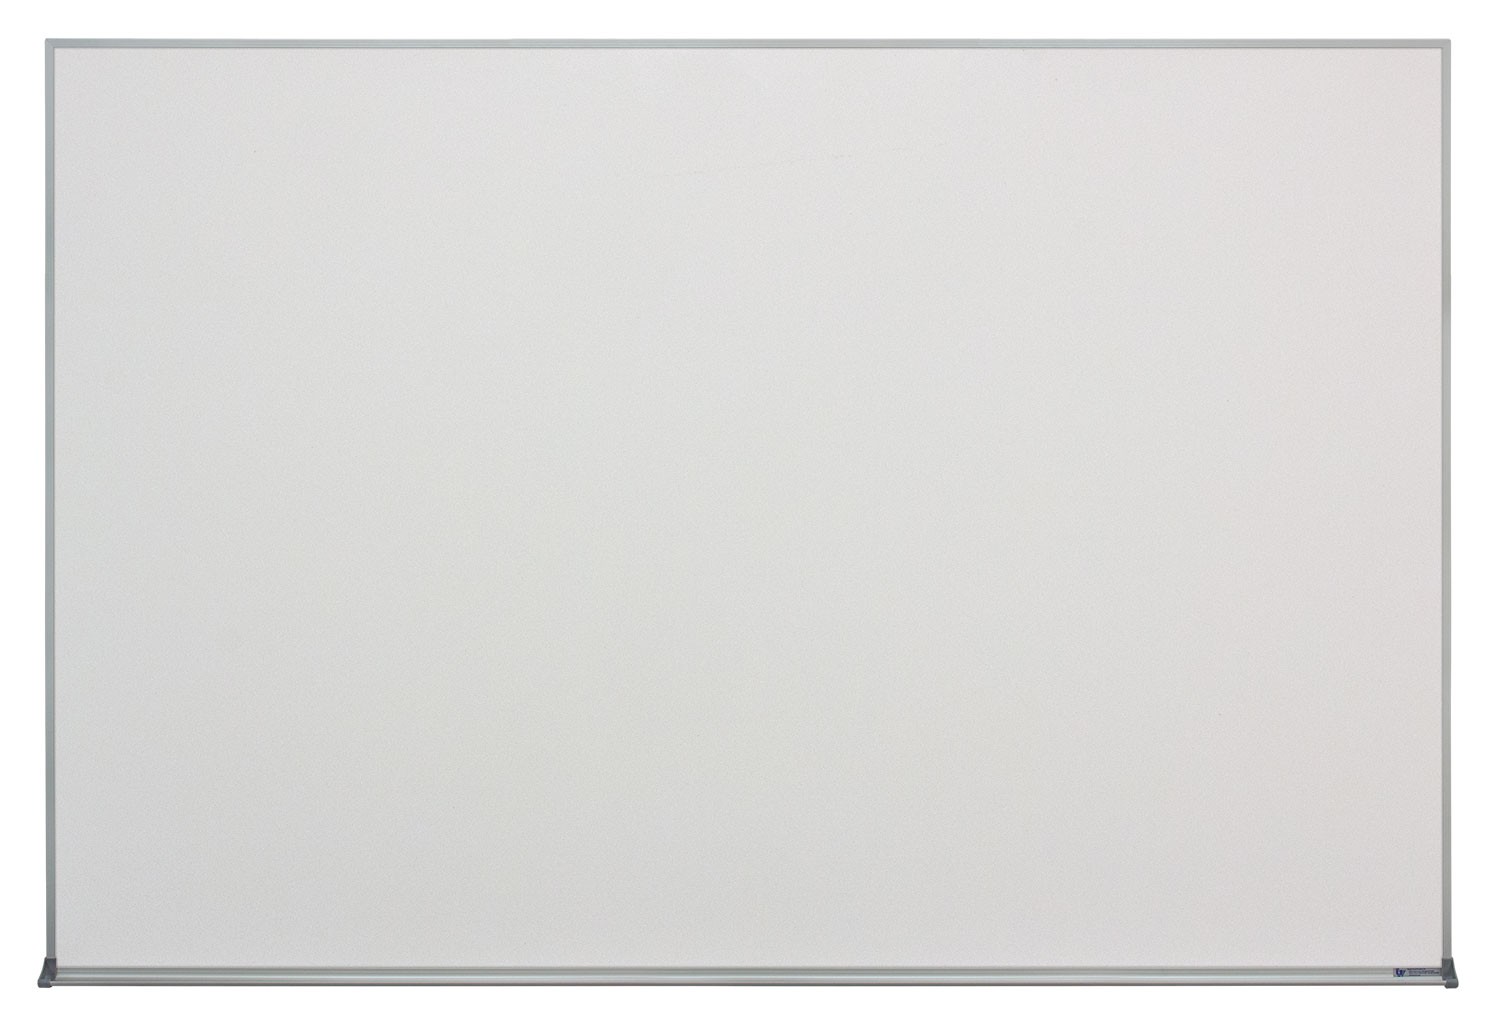 72 x 48" Aluminum Framed Dry/Wet Erase Board